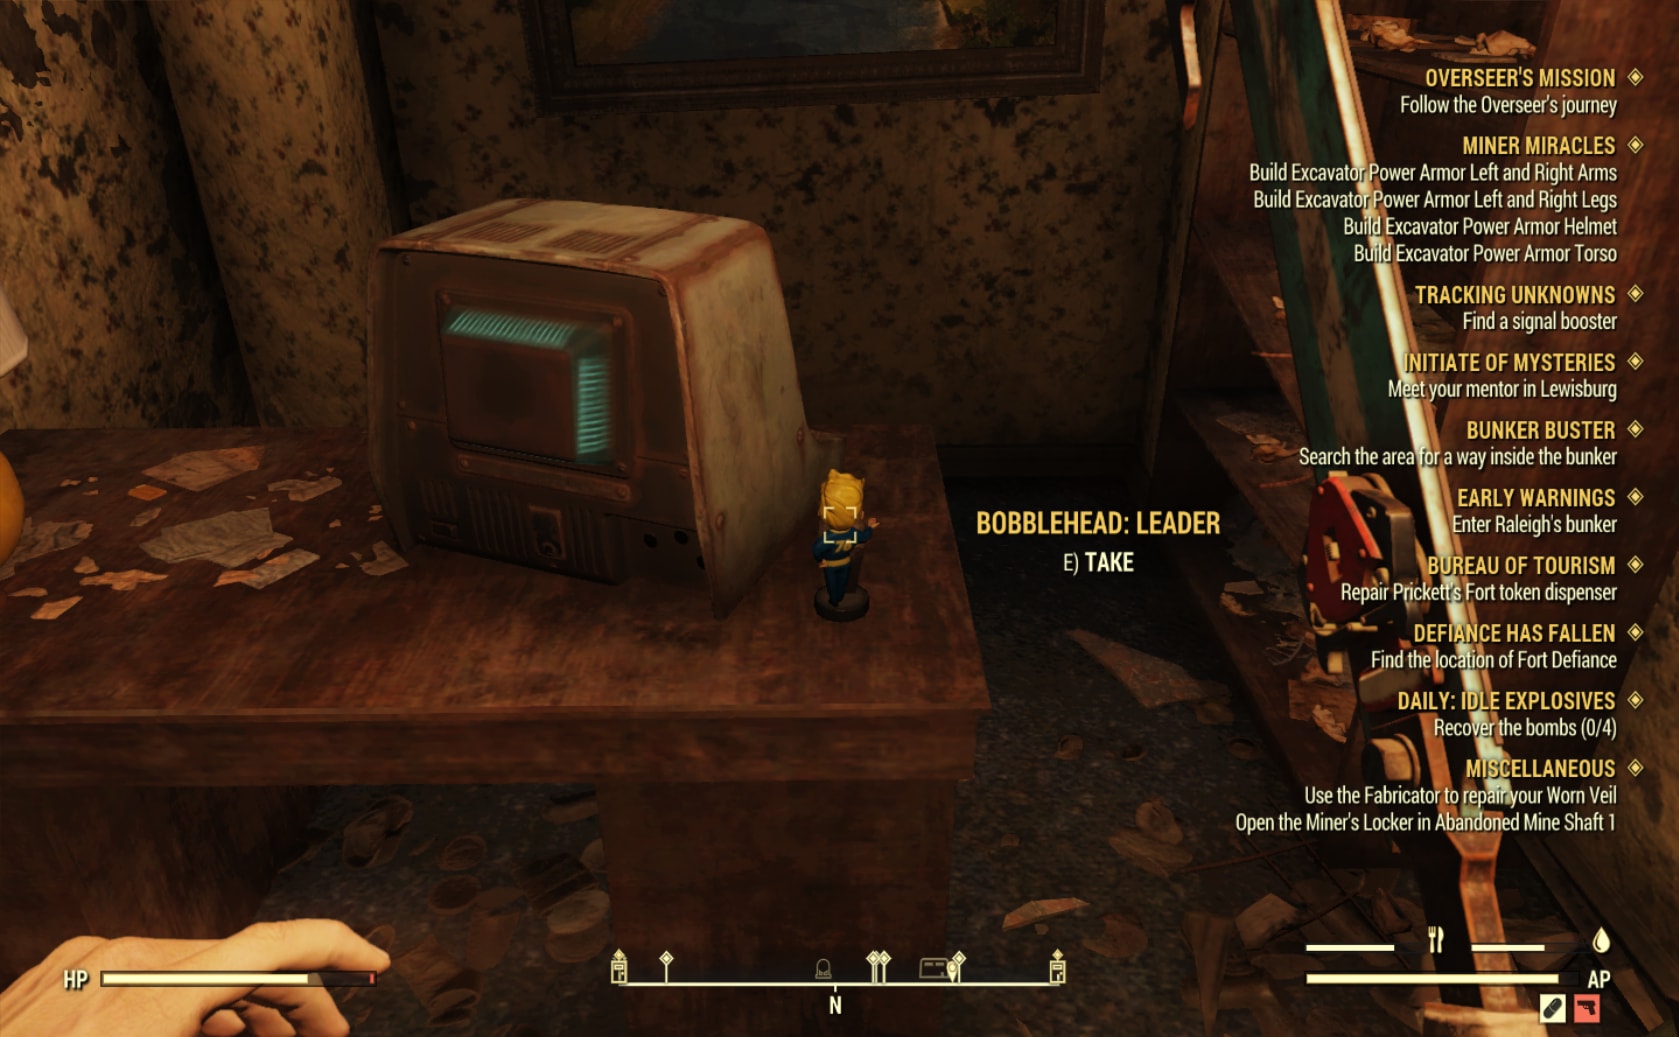 مبكر استمر مستنقع Meet Your Mentor In Lewisburg Fallout 76 Oppskriften Net